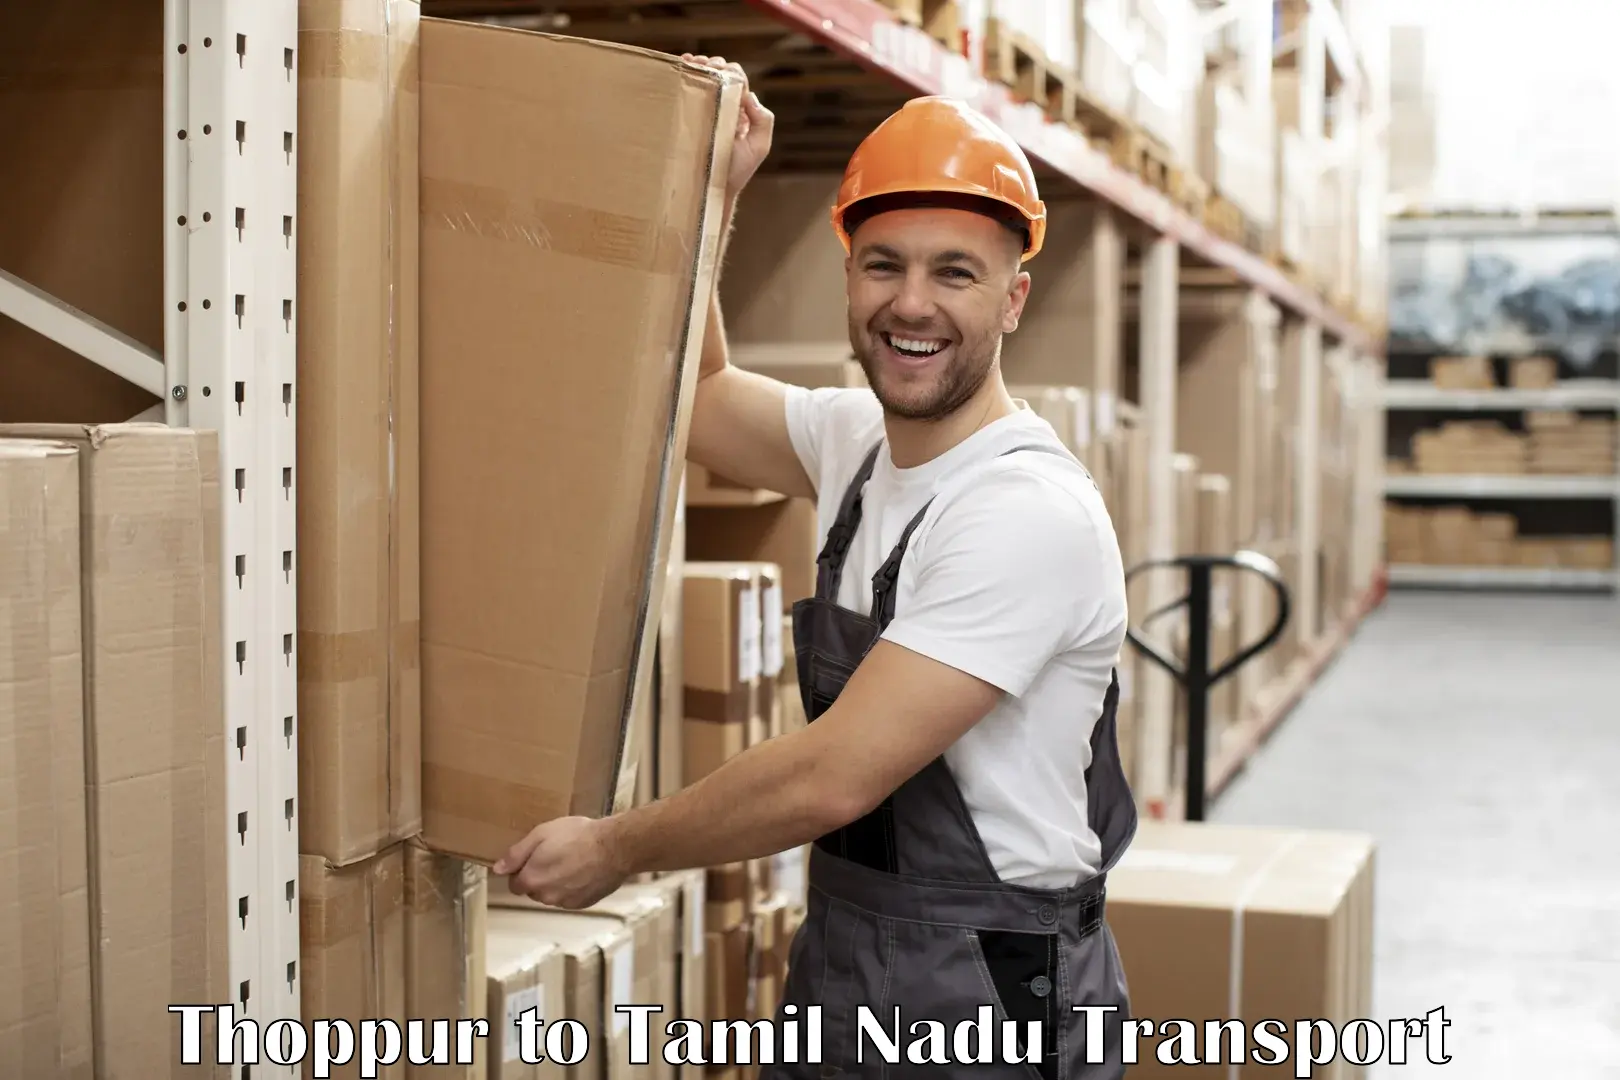 Shipping partner Thoppur to Rasipuram